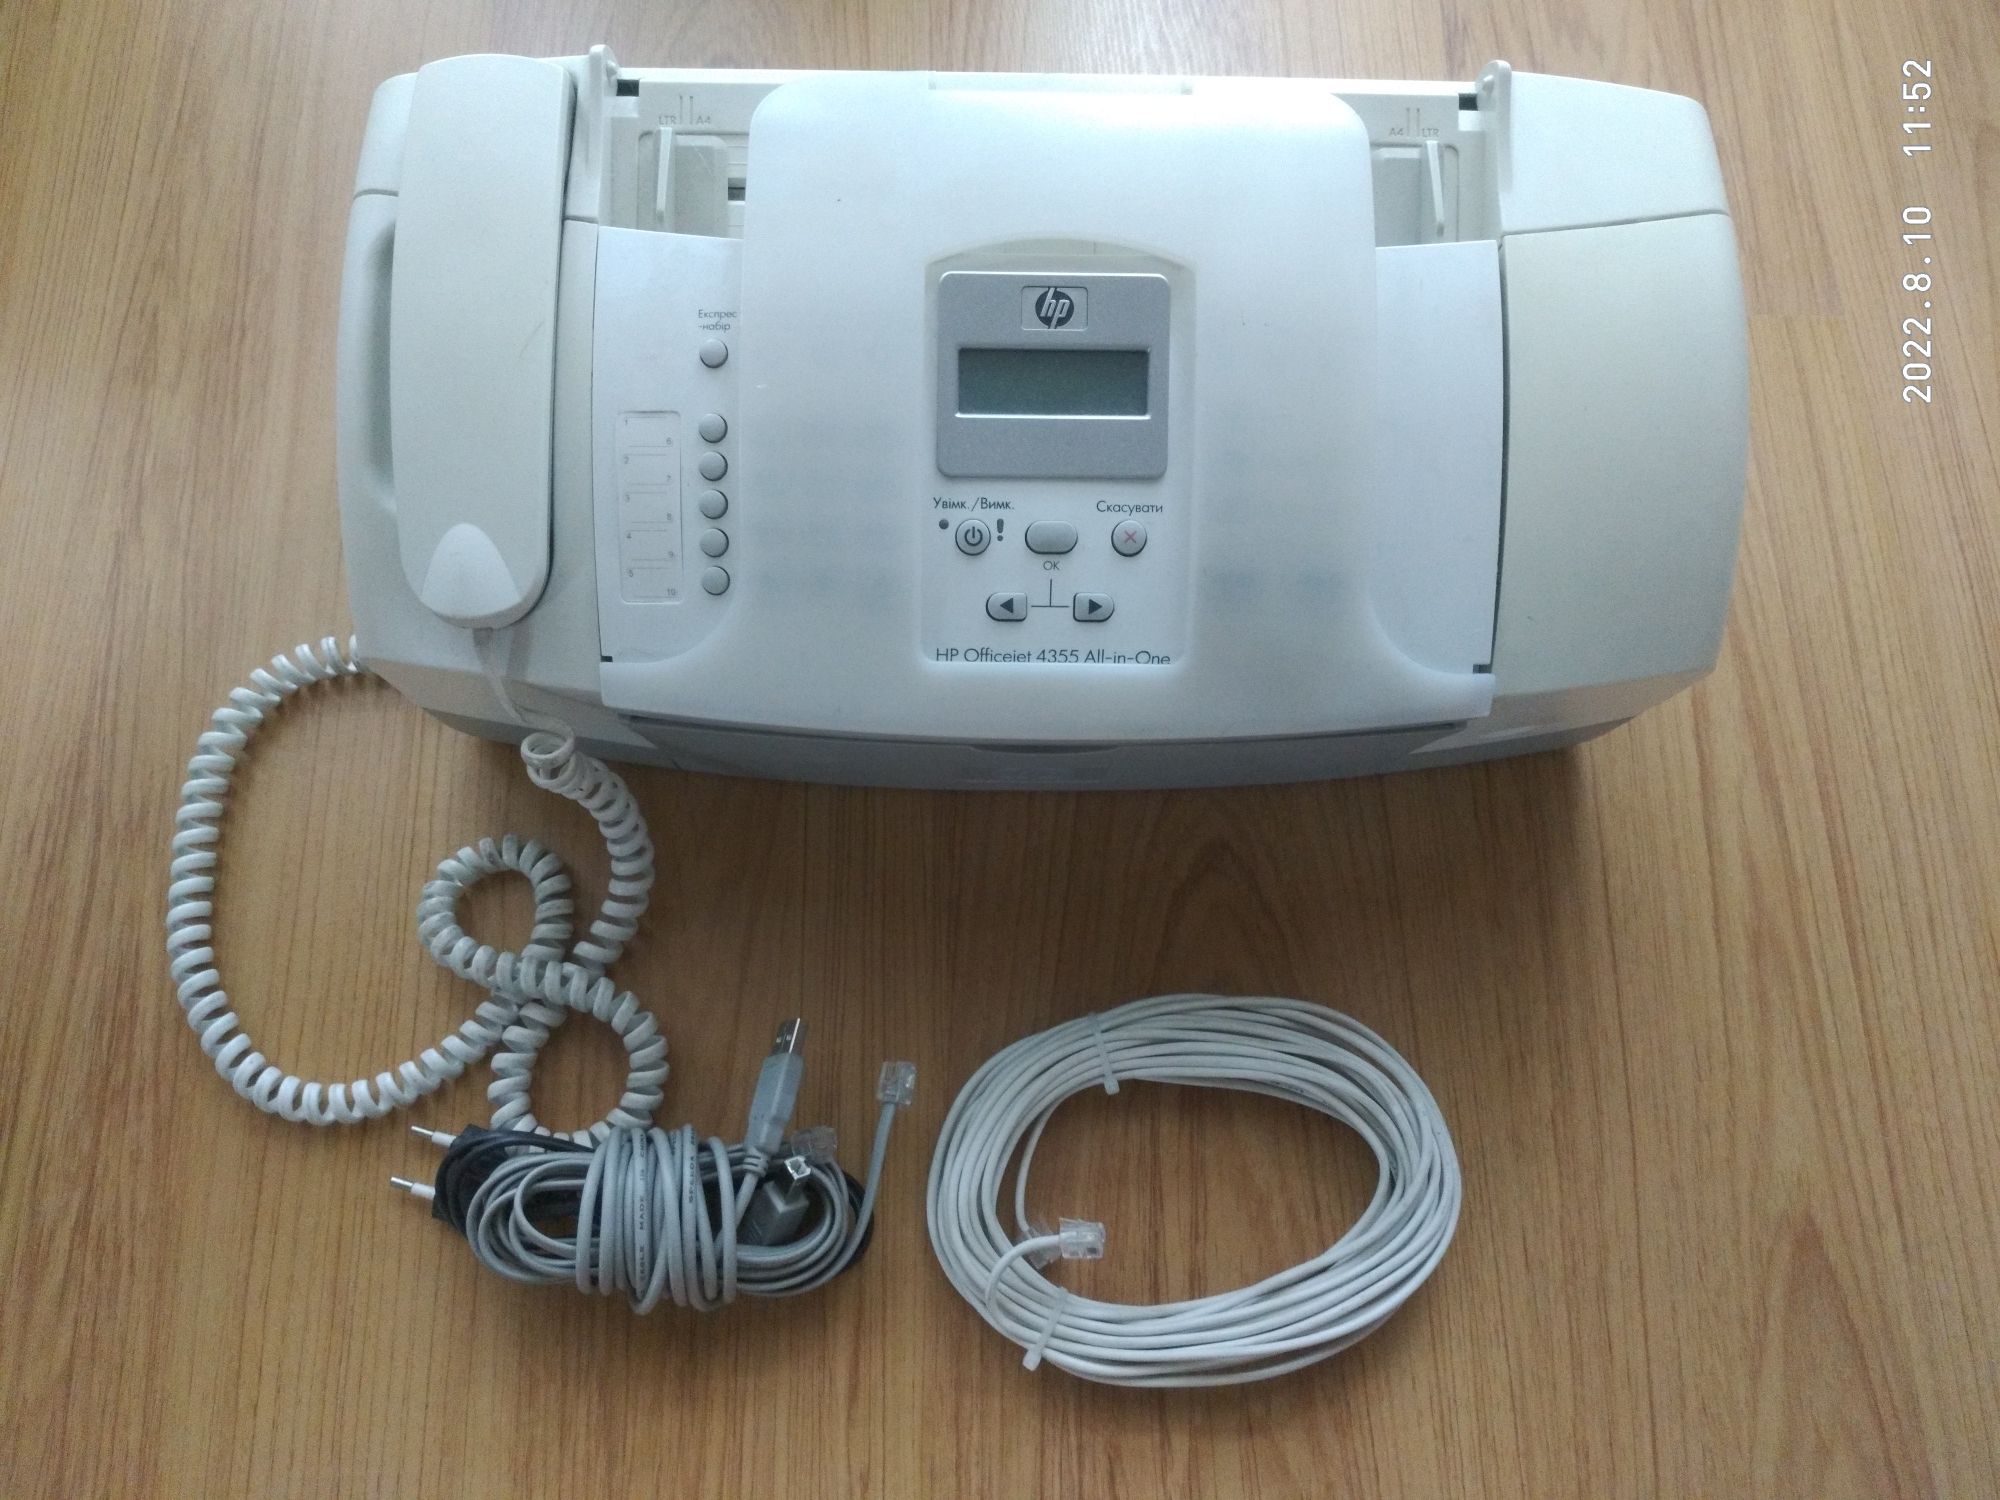 Офисный принтер, сканер, телефон-факс, копирователь HP Officejet 4355